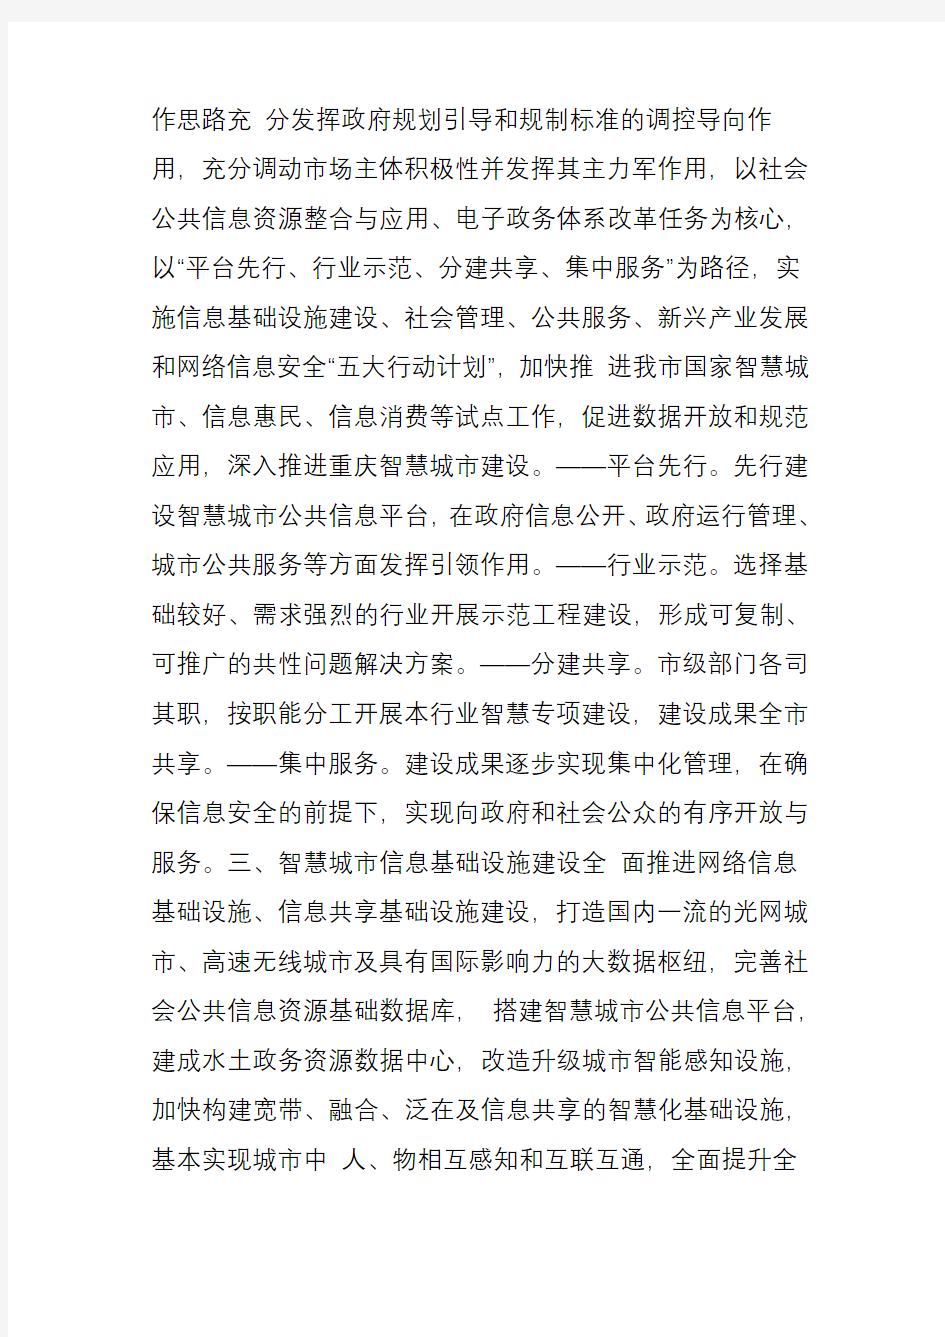 重庆市深入推进智慧城市建设总体方案(2015―2020